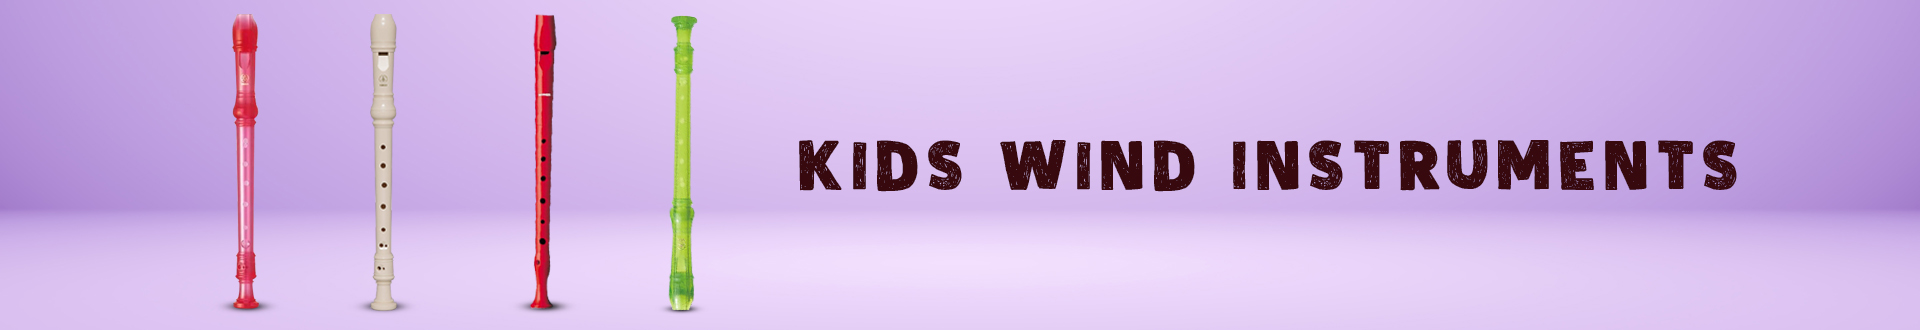 Kids Wind Instruments